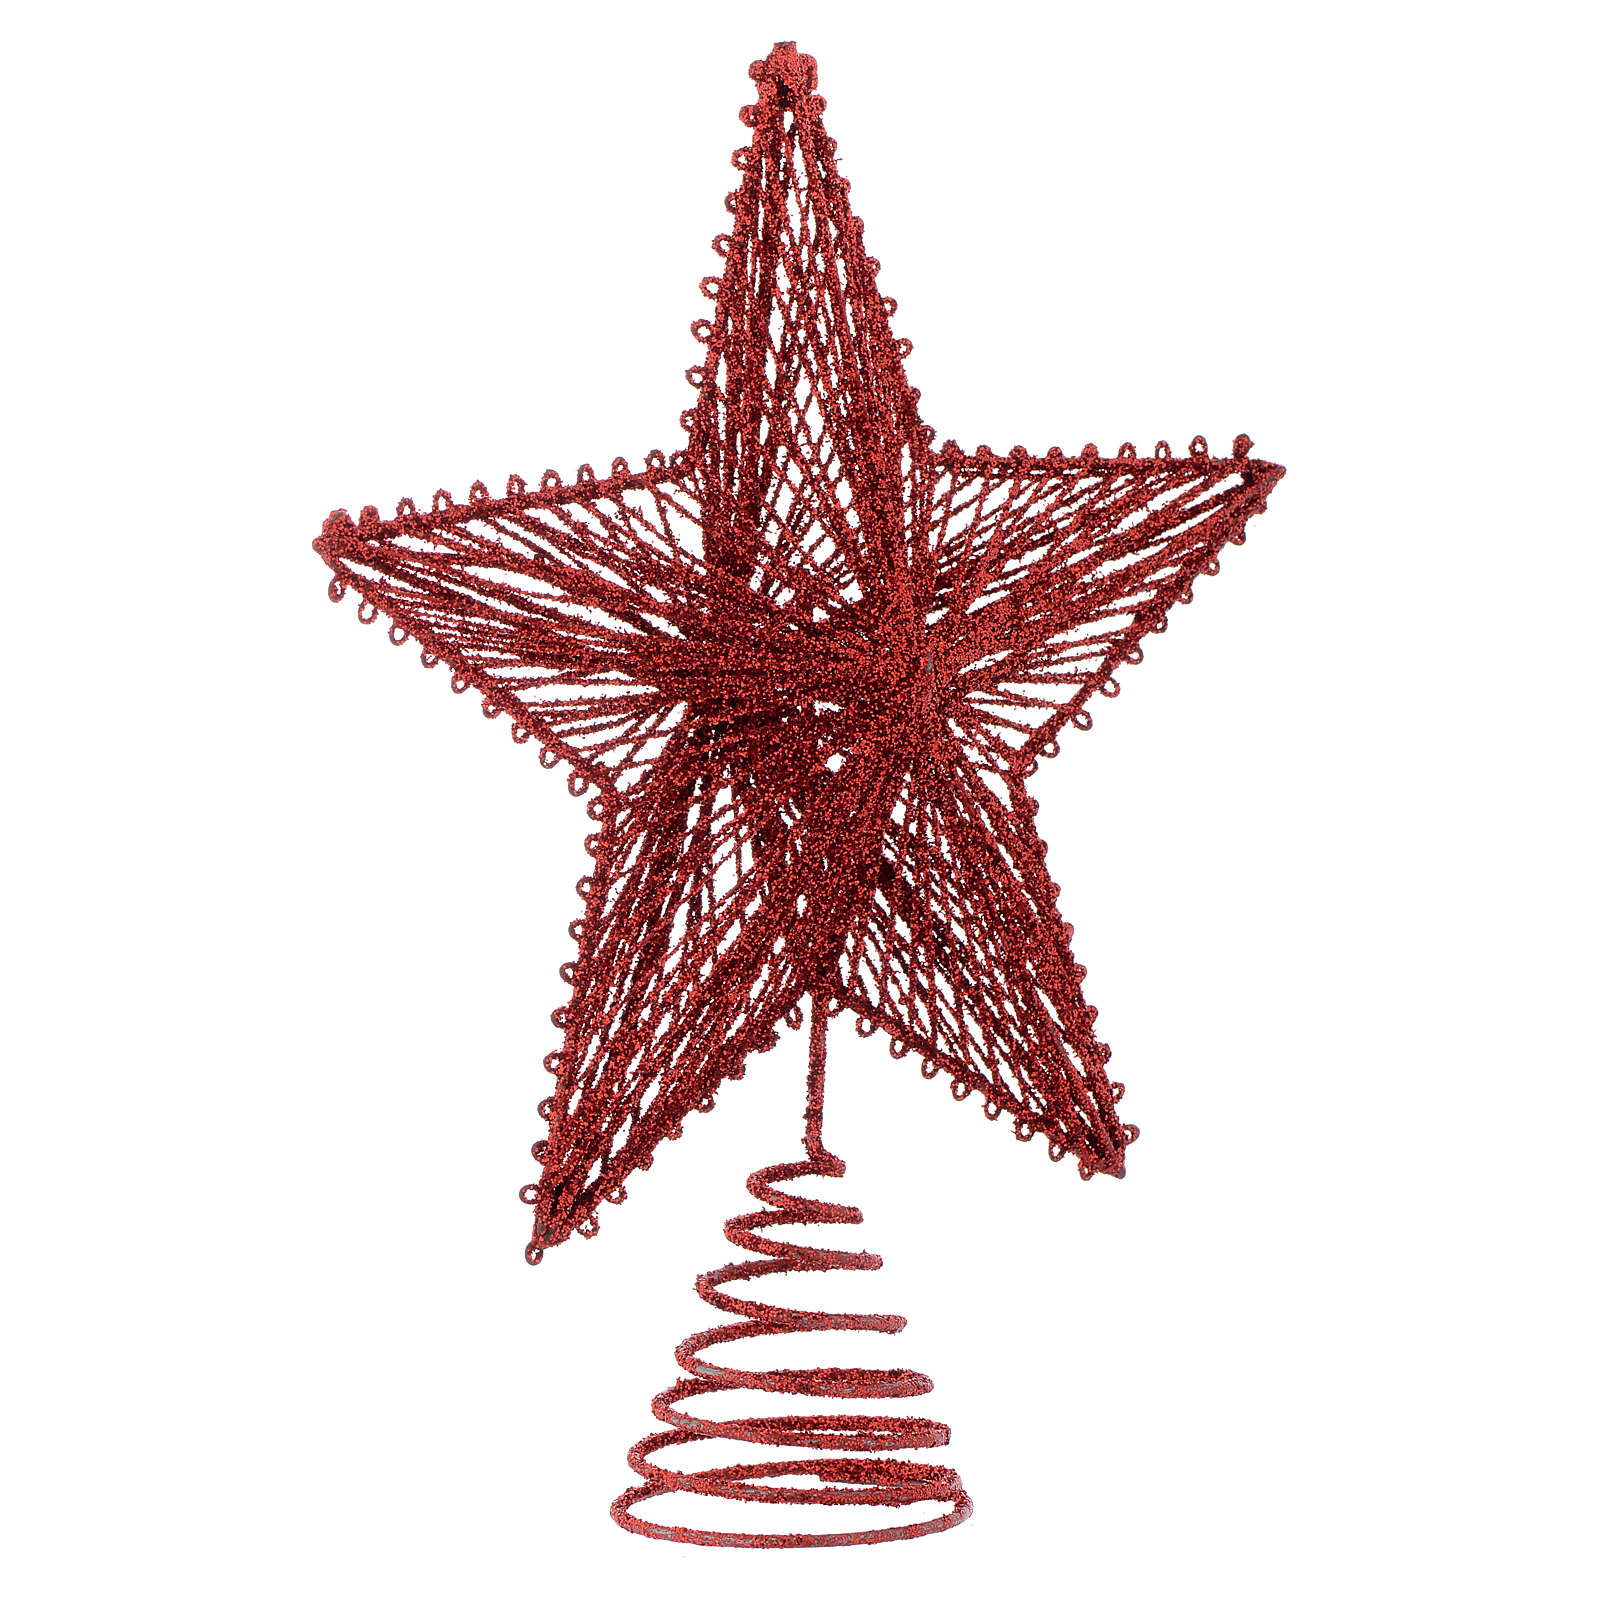 Puntale A Stella Per Albero Di Natale.Puntale 25 Cm Stella Per Albero Di Natale Colore Rosso Vendita Online Su Holyart